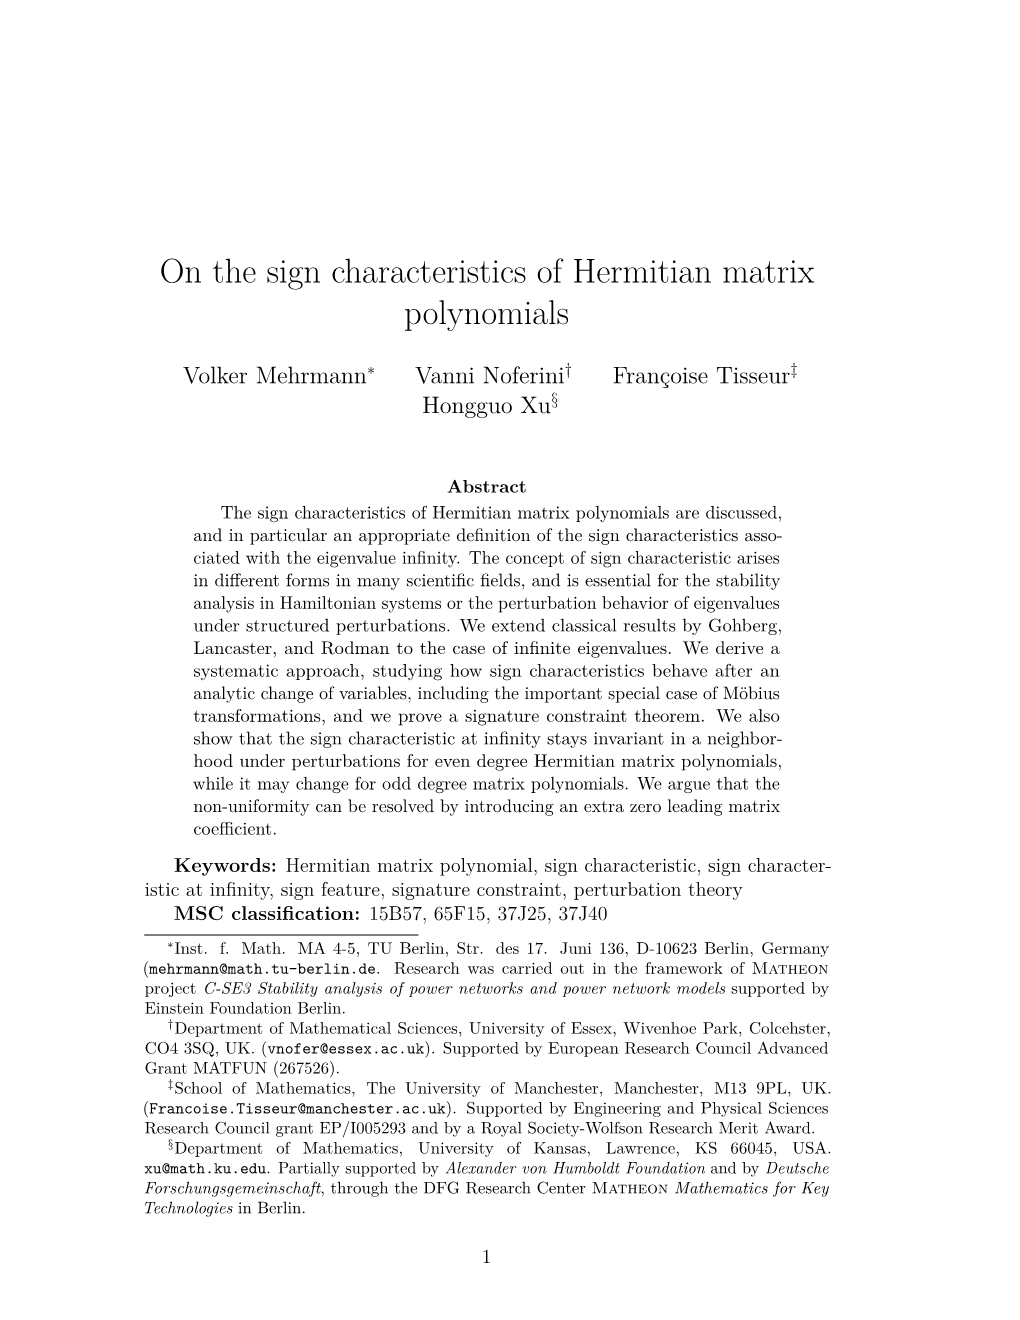 On the Sign Characteristics of Hermitian Matrix Polynomials